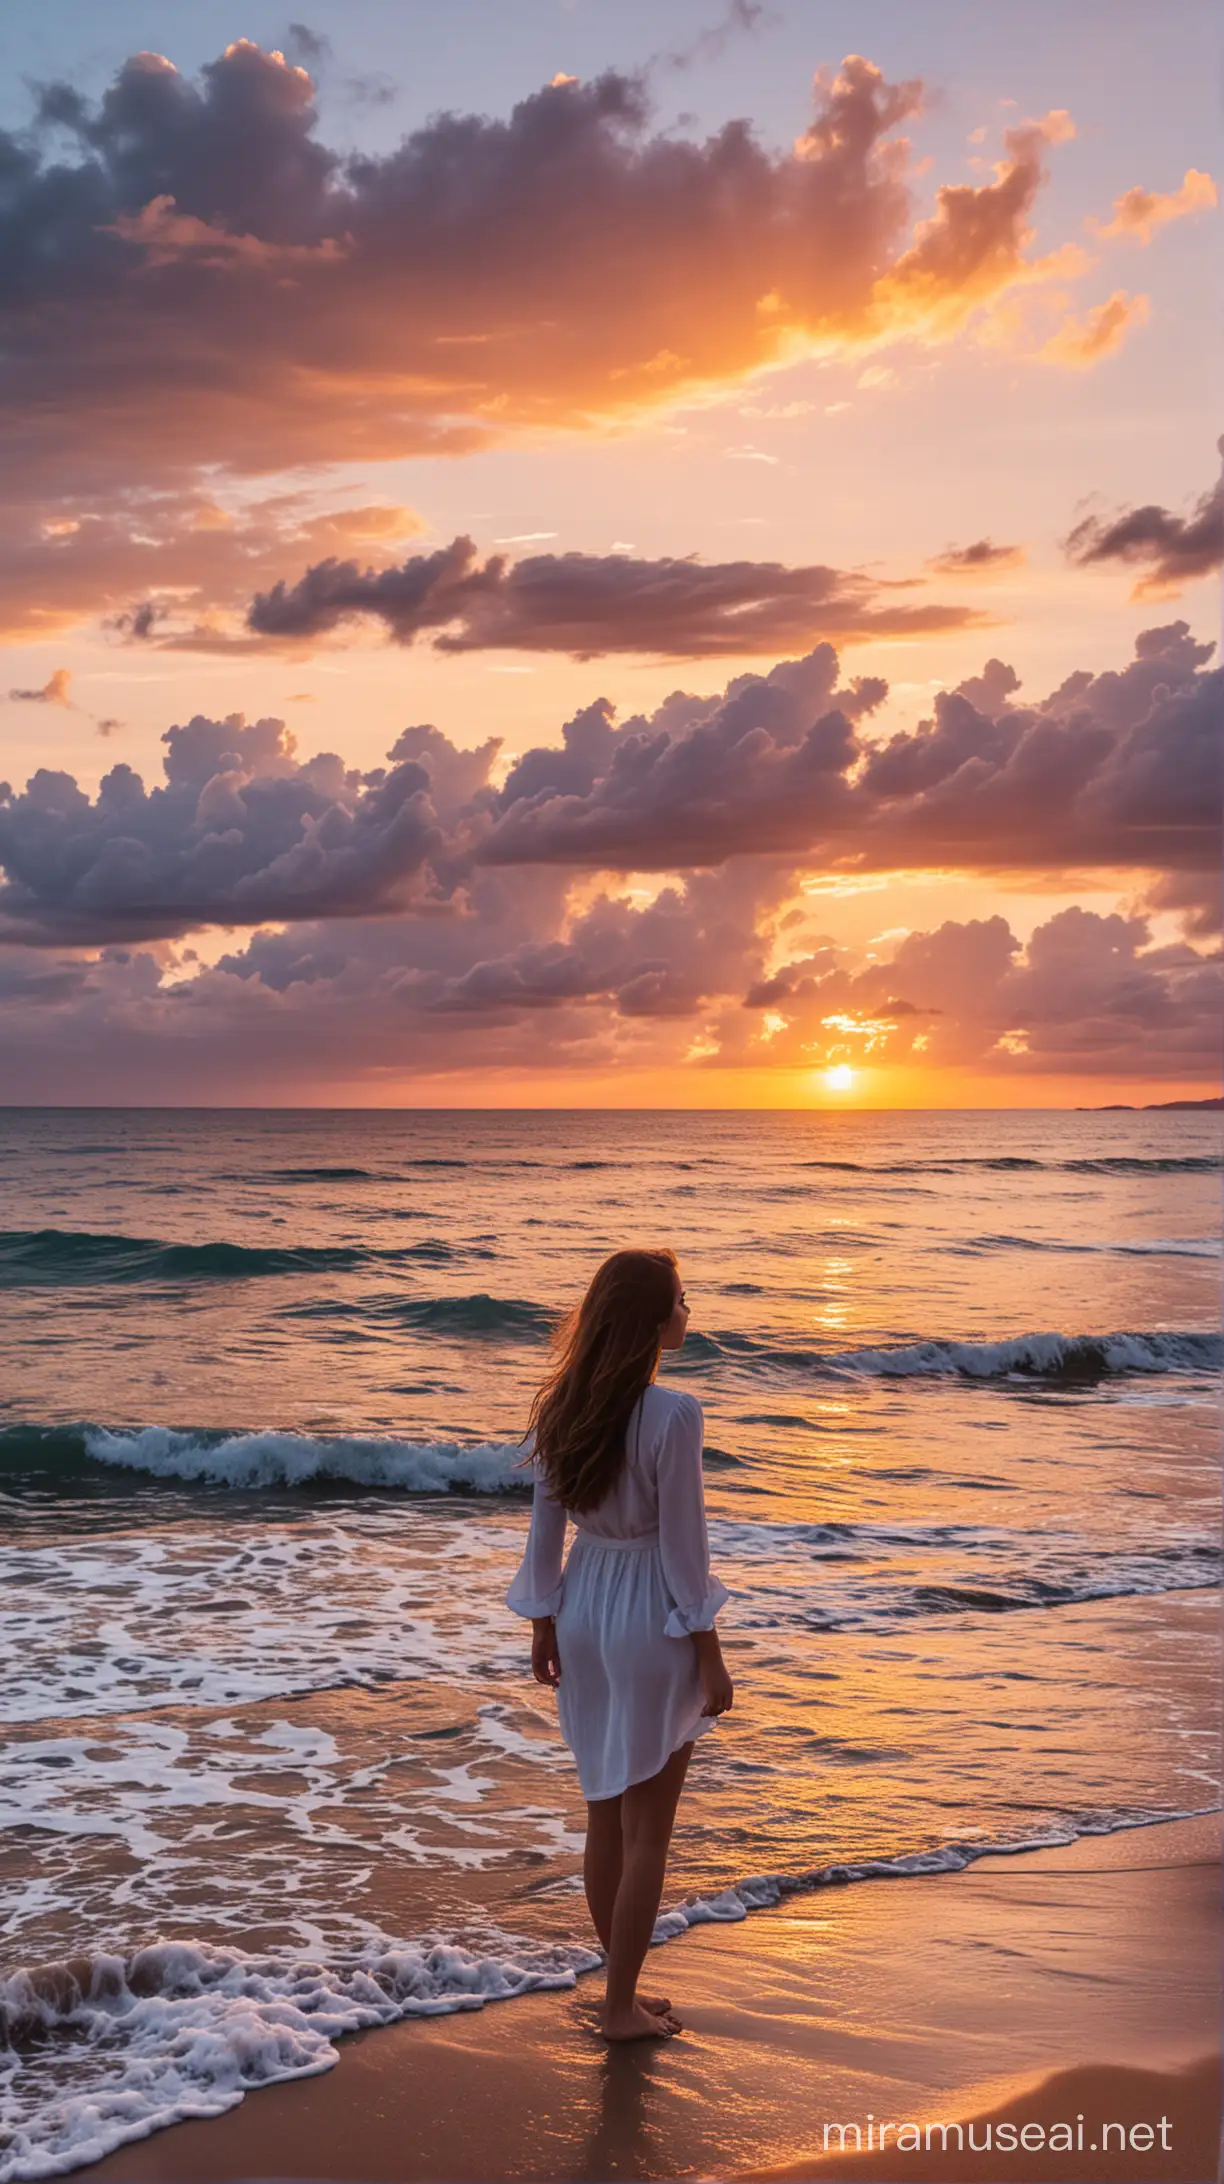 дівчина на березі моря дивиться на захід сонця на фоны гарного неба